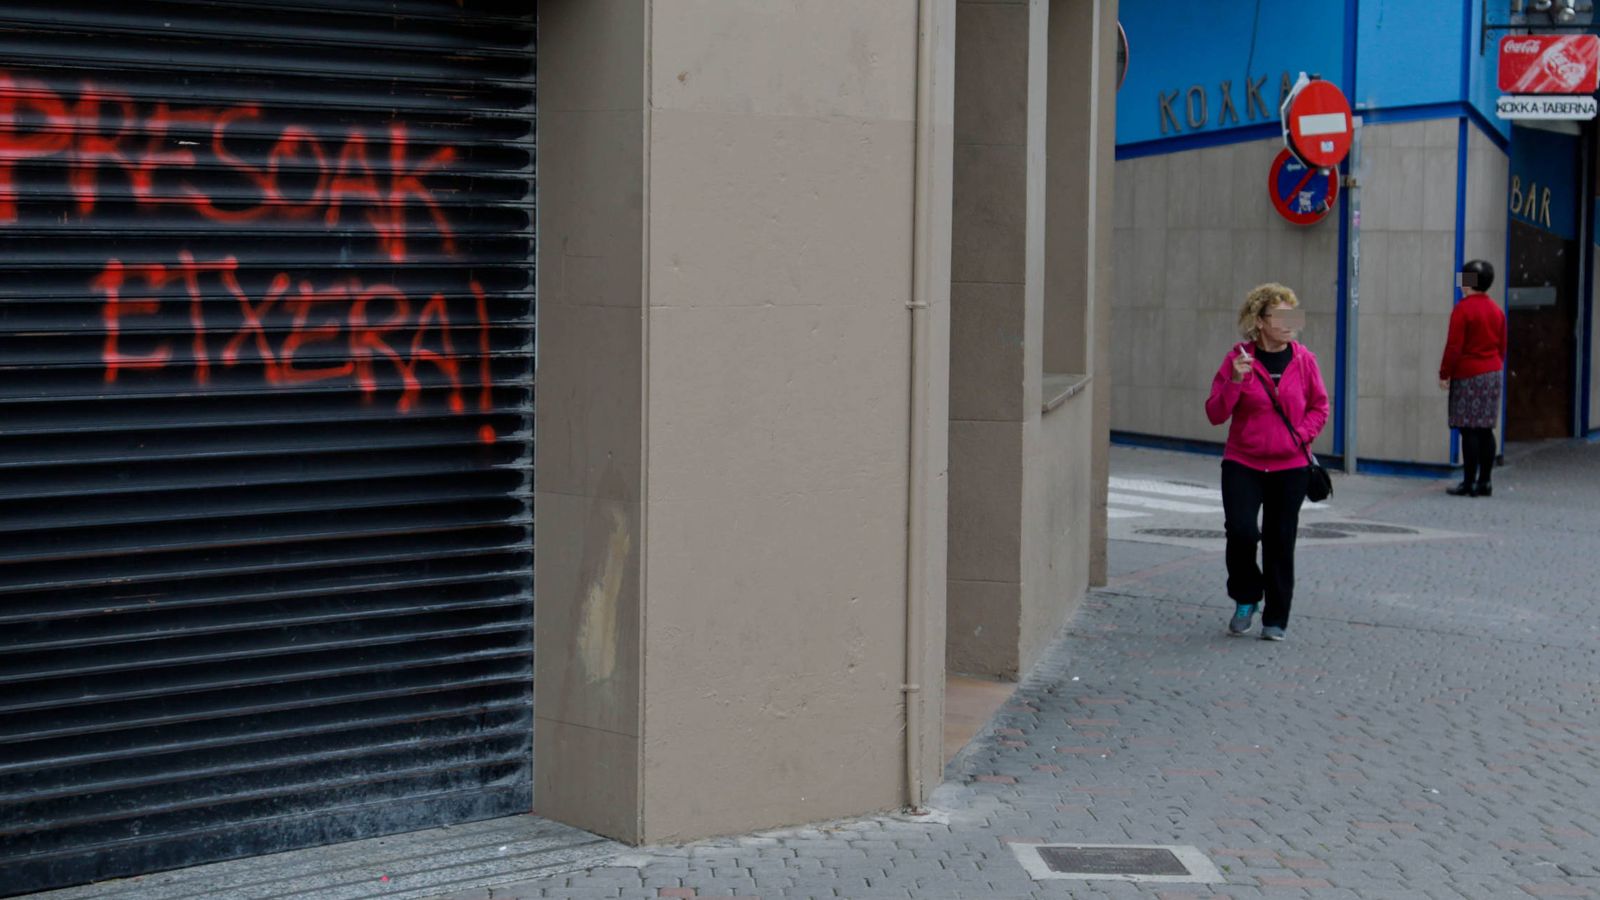 Foto: A la derecha, exterior del bar donde ocurrió la agresión y una pintada en apoyo a los presos etarras en el local de al lado. (Foto: Justy García Koch)